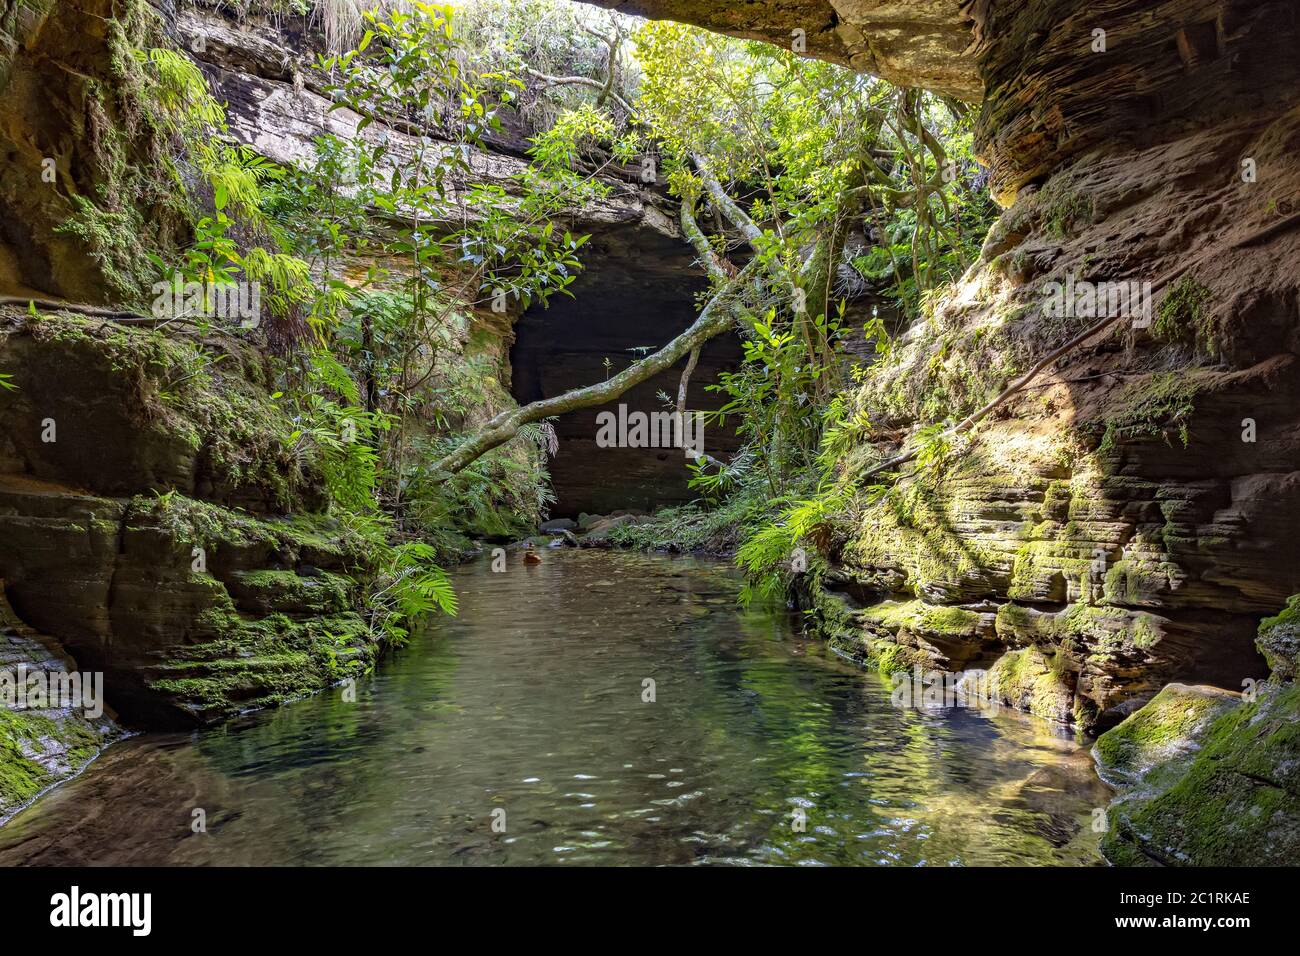 Rivière au milieu des rochers, des mousses, des grottes et de la végétation dans la forêt tropicale Banque D'Images